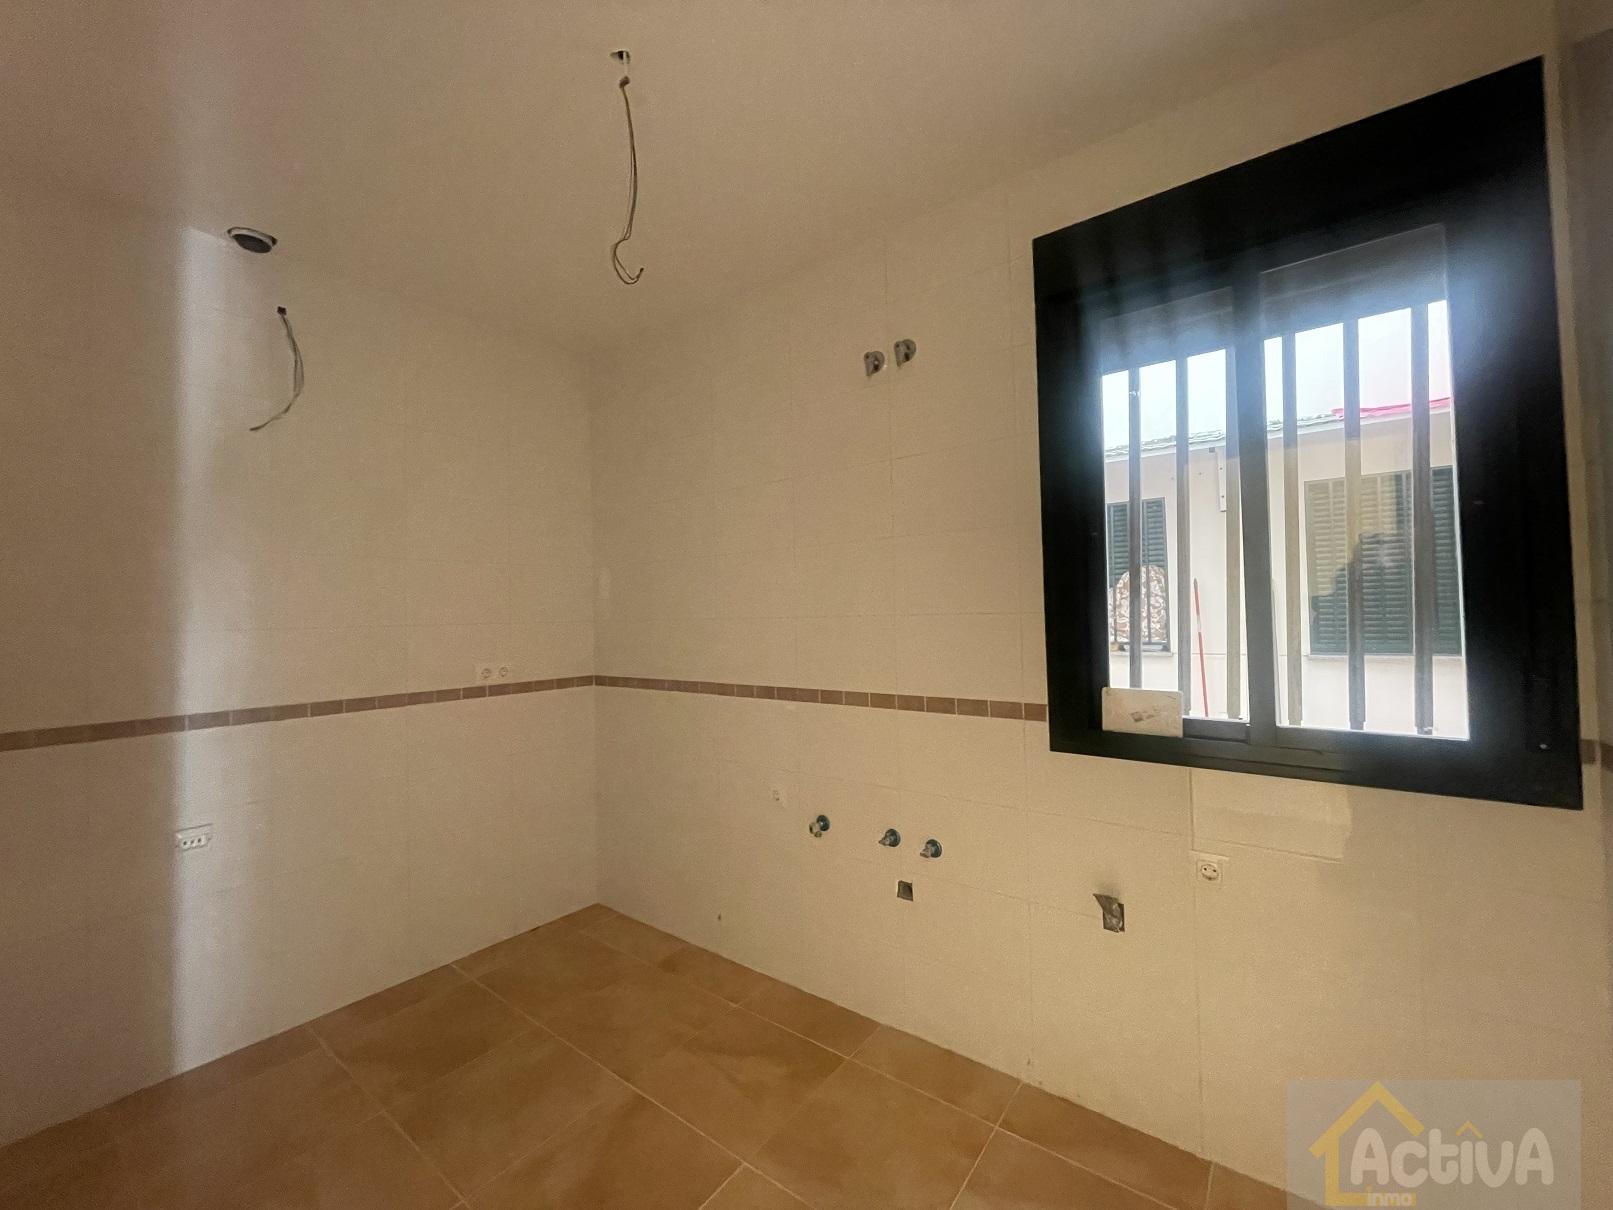 For sale of apartment in Orellana la Vieja